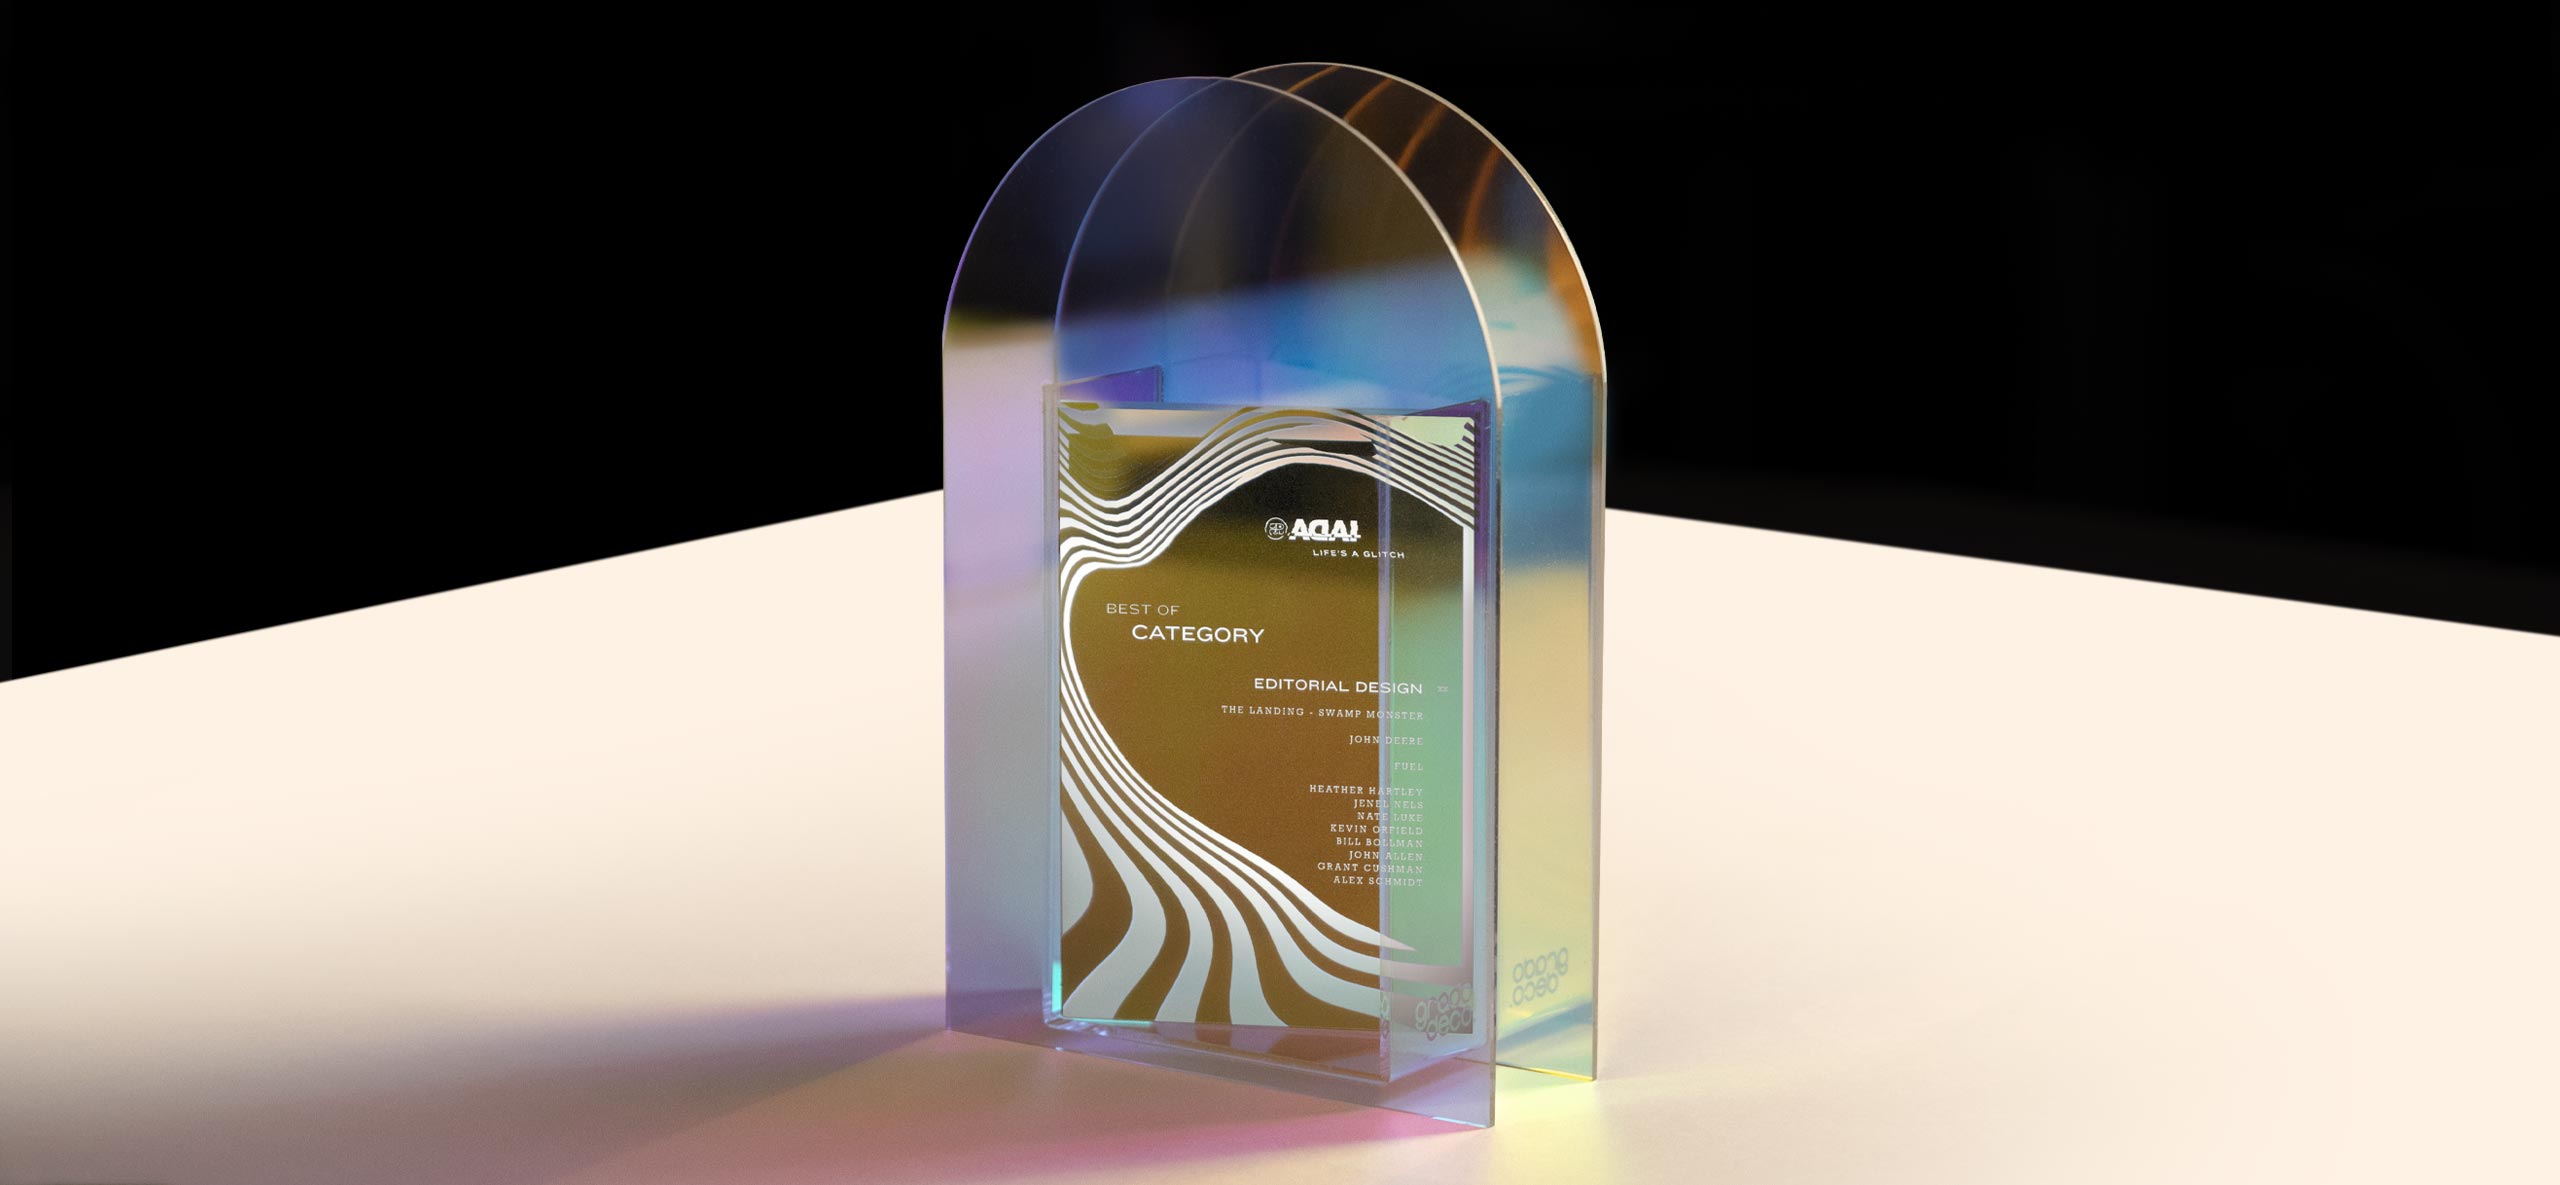 ADAI 2021 Best of Category Award